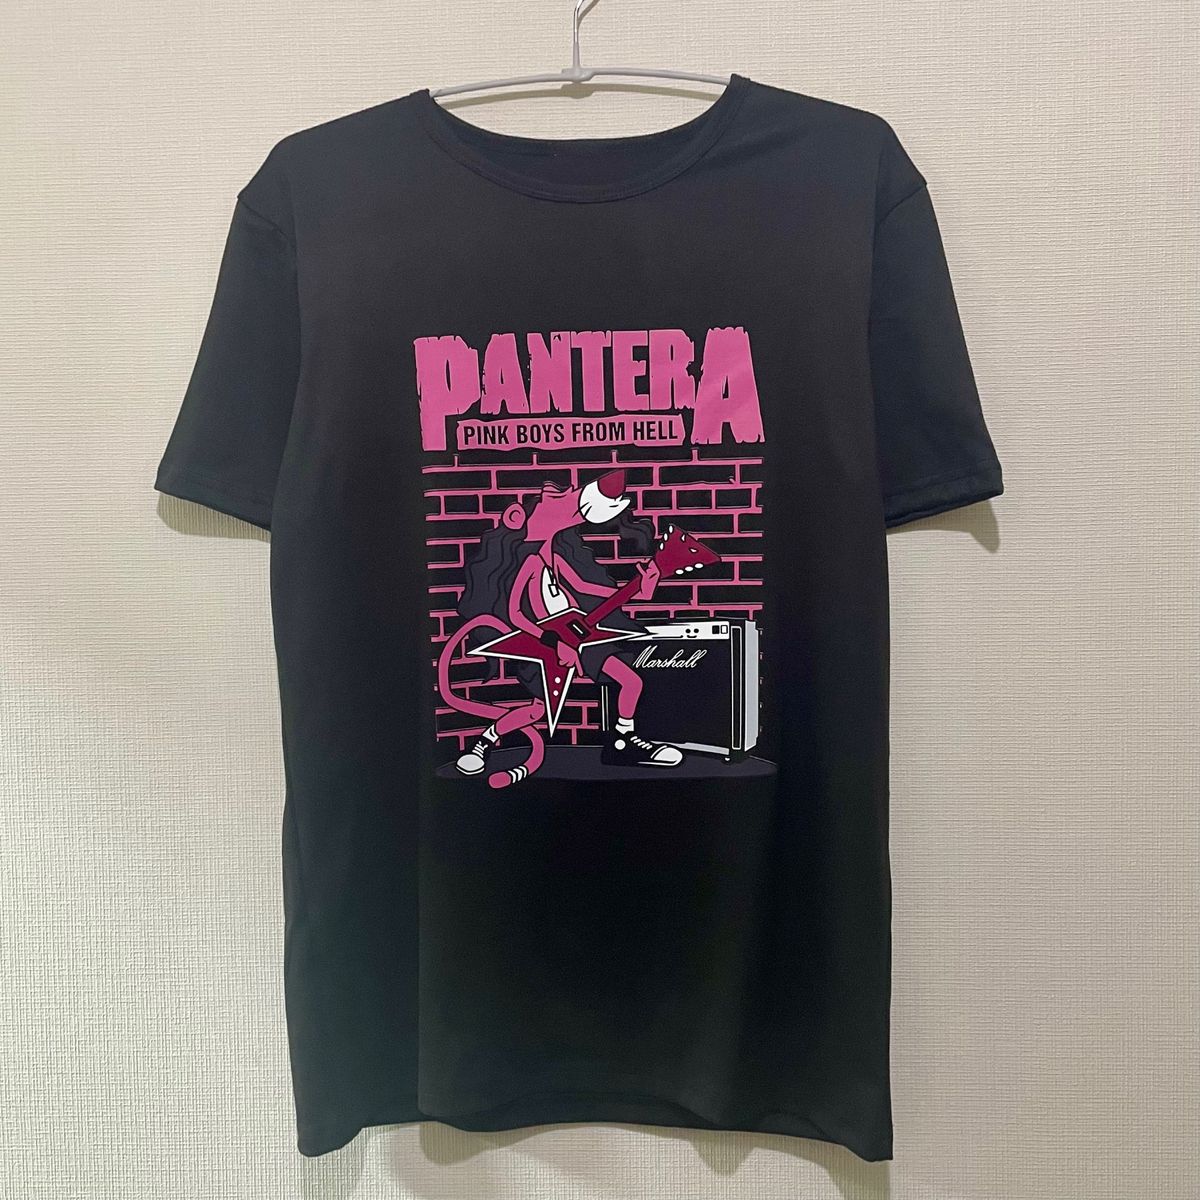 PANTERA Tシャツ フリーサイズ ピンクパンサー パンテラ Tee